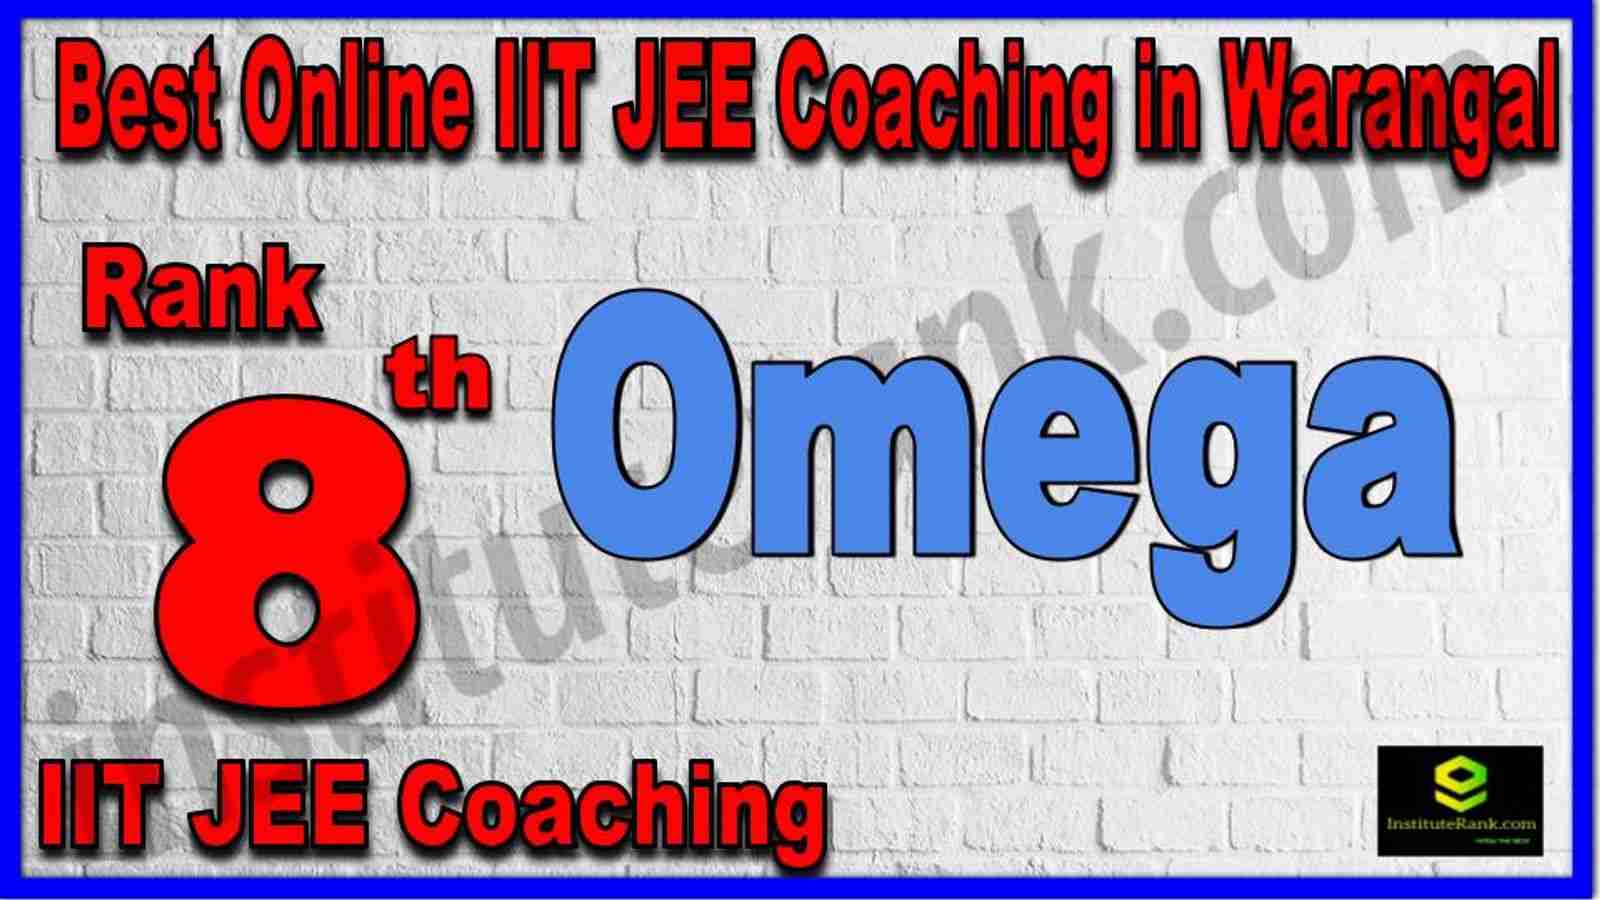 Rank 8th Best Online IIT JEE Coaching in Warangal